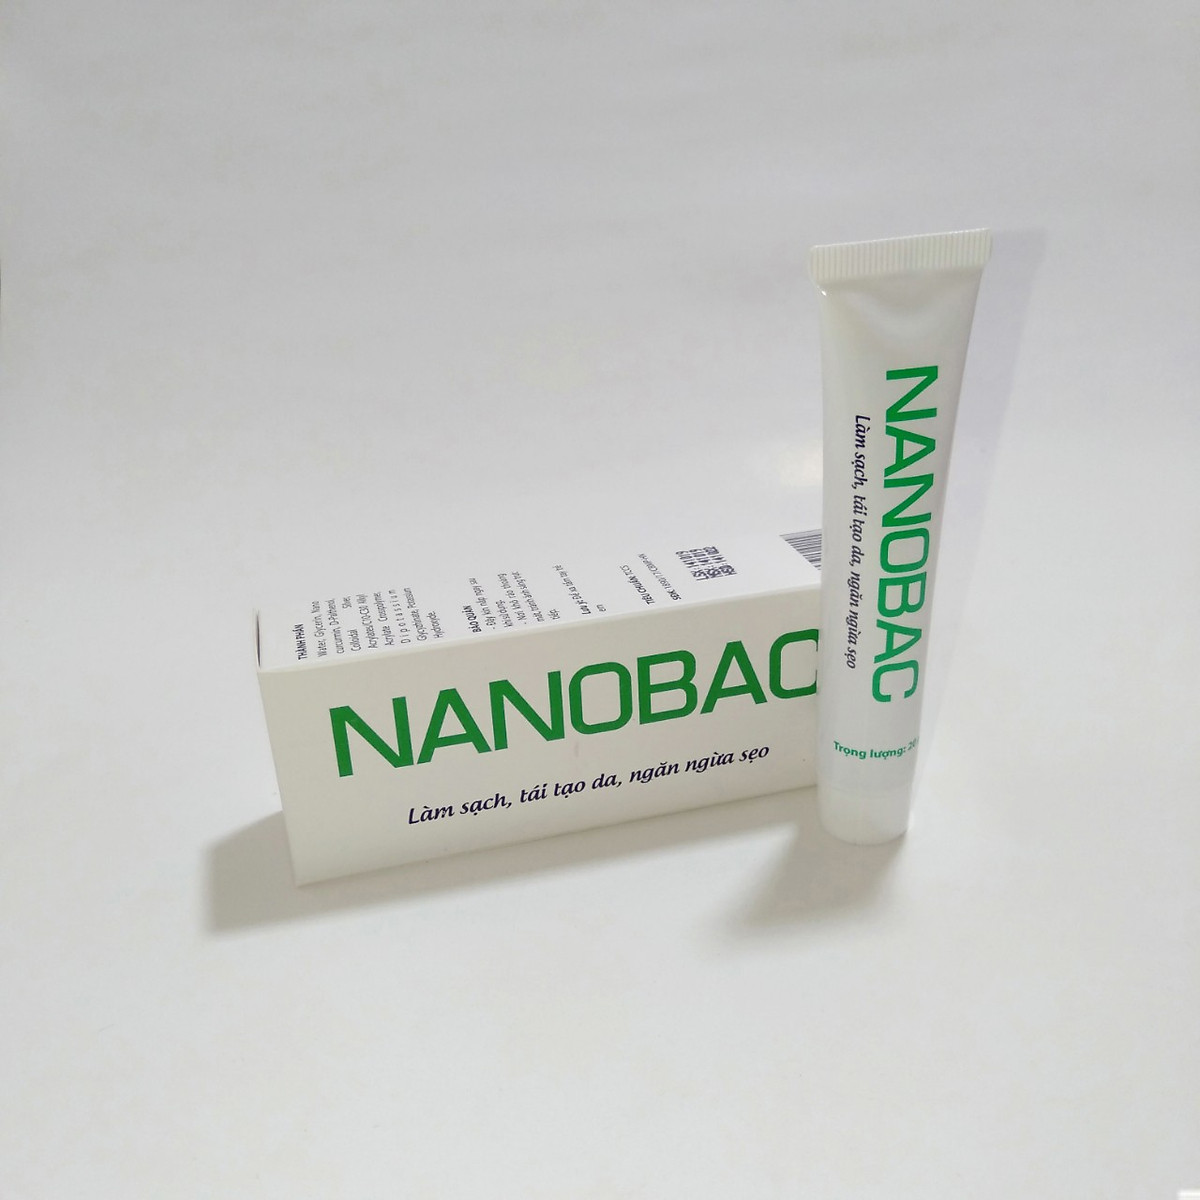 [BỘ SẢN PHẨM] Gel bôi NANOBAC tuýp 20g làm sạch, tái tạo da, ngăn ngừa sẹo  & Kem BOIHAM tuýp 10g giúp giảm hăm, bảo vệ làn da bé yêu của bạn ( hàng chính hãng) 